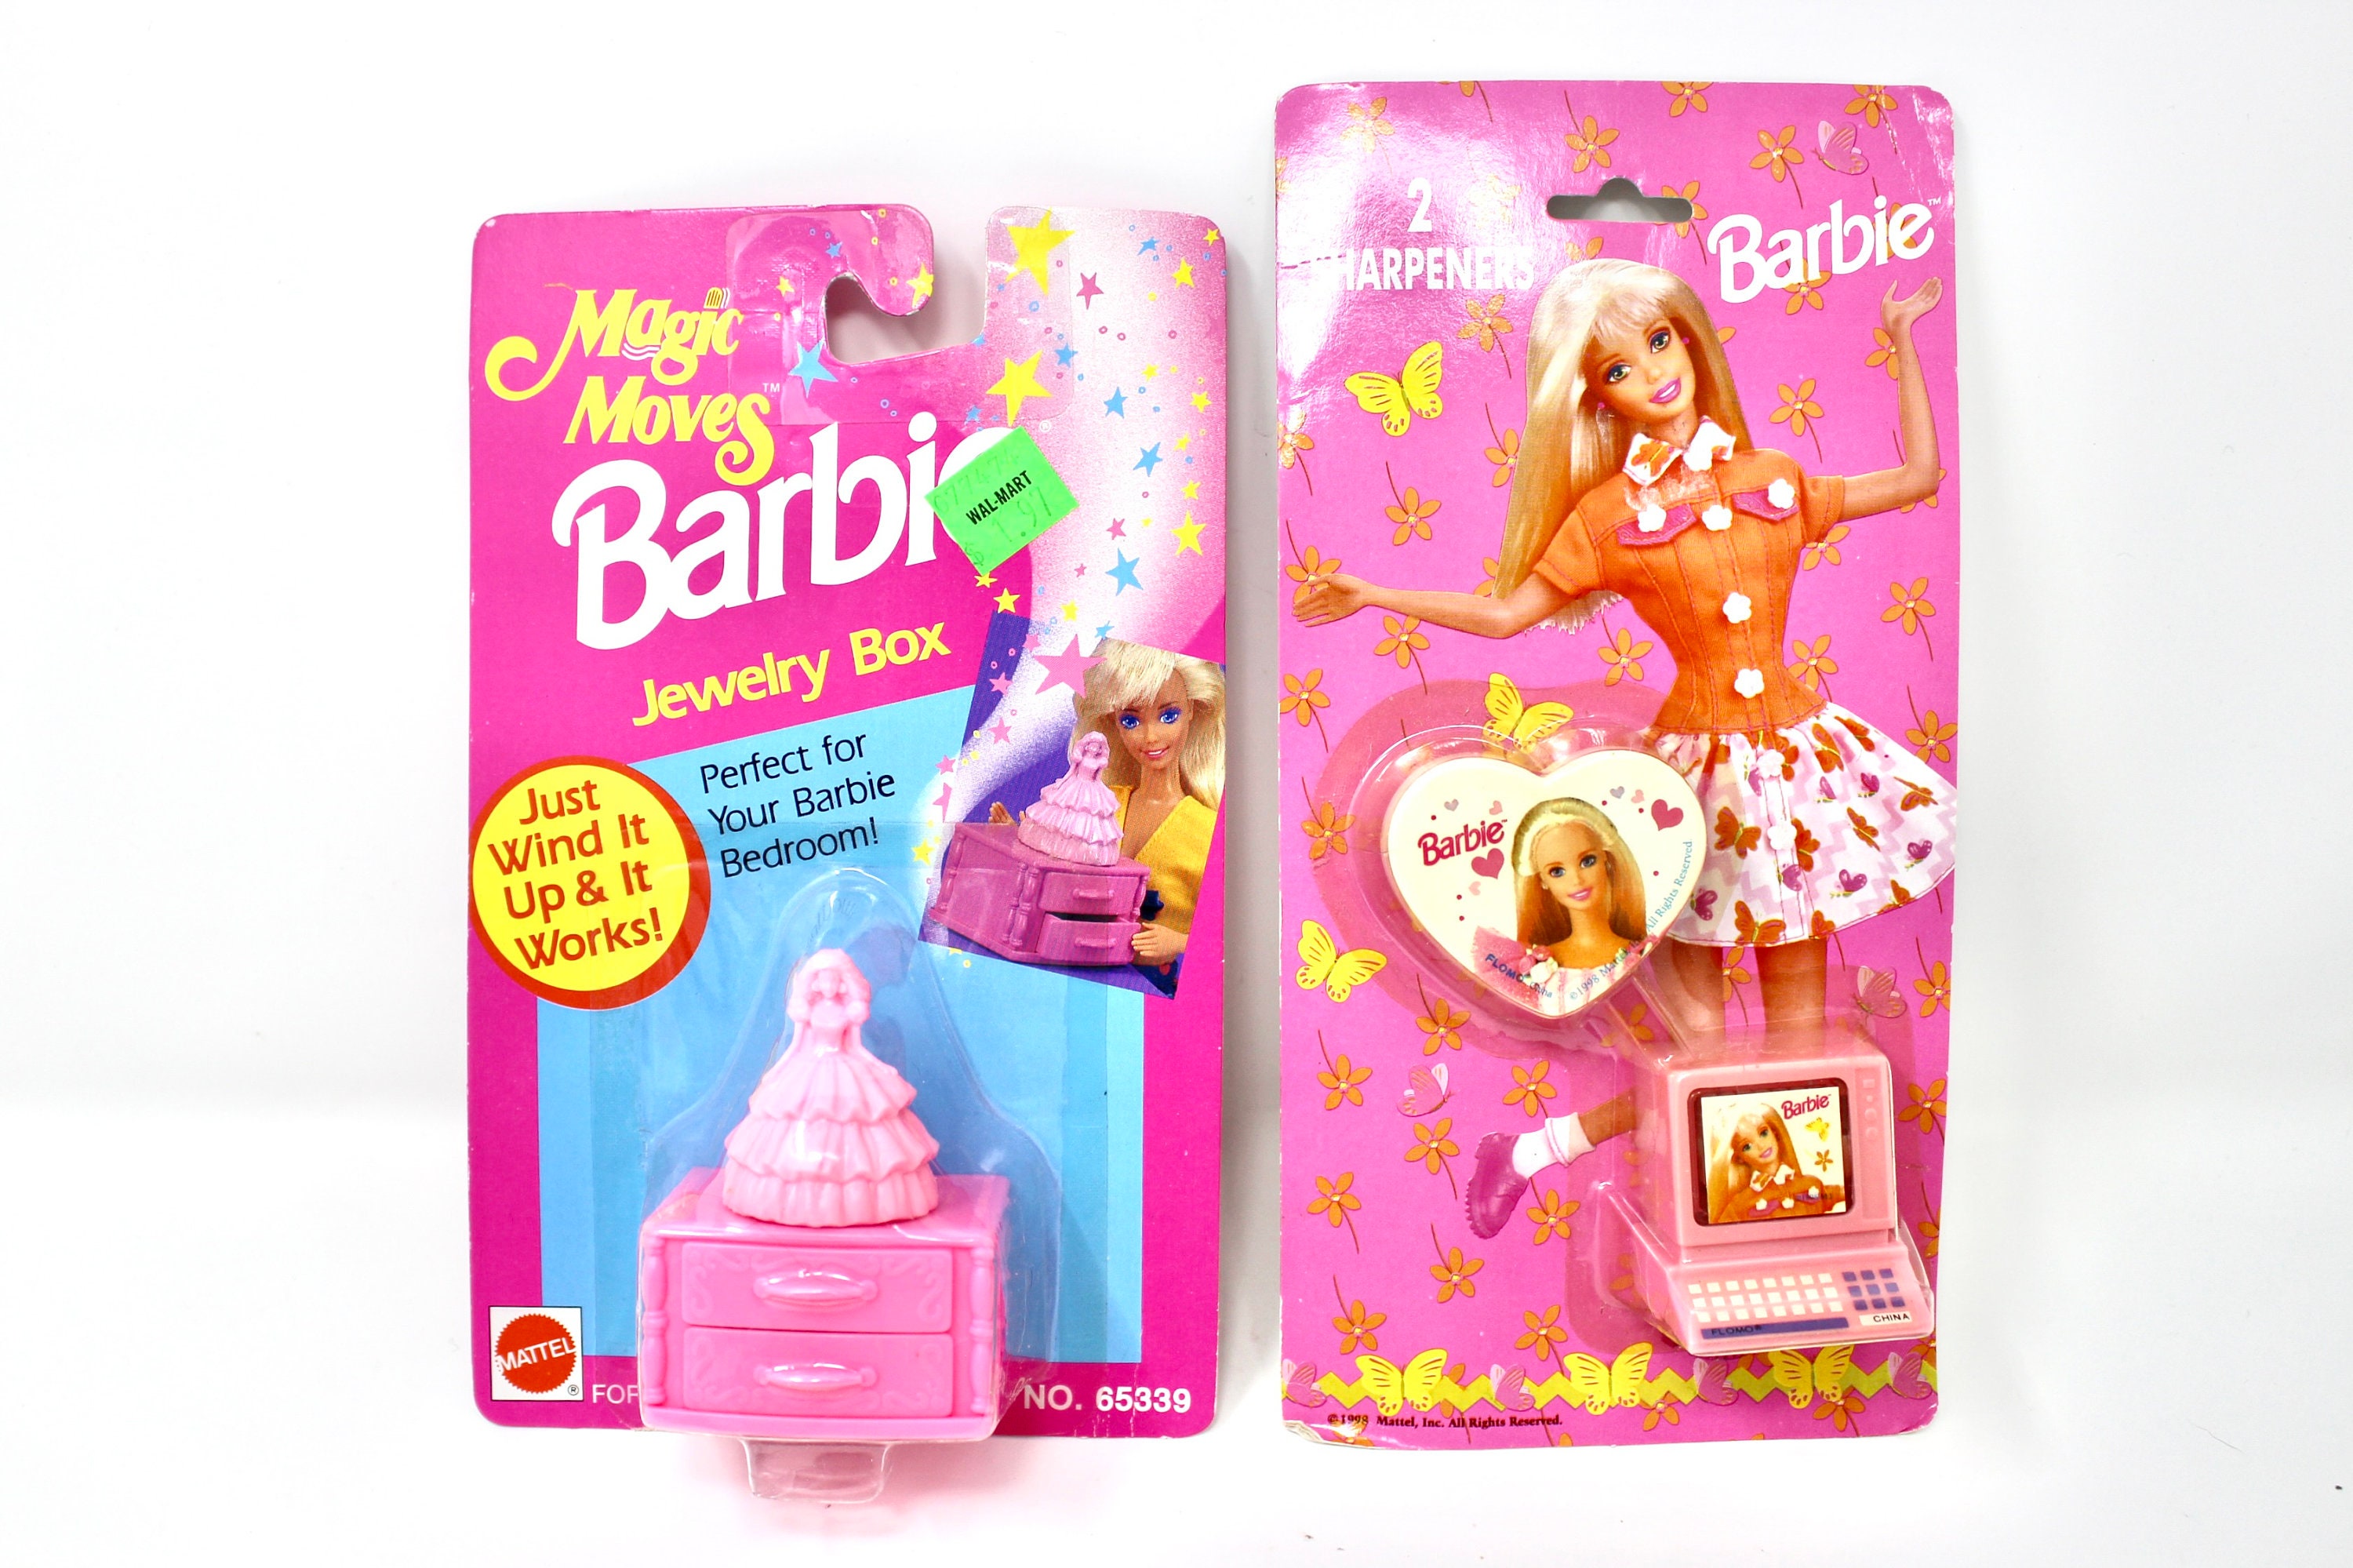 barbie Green box